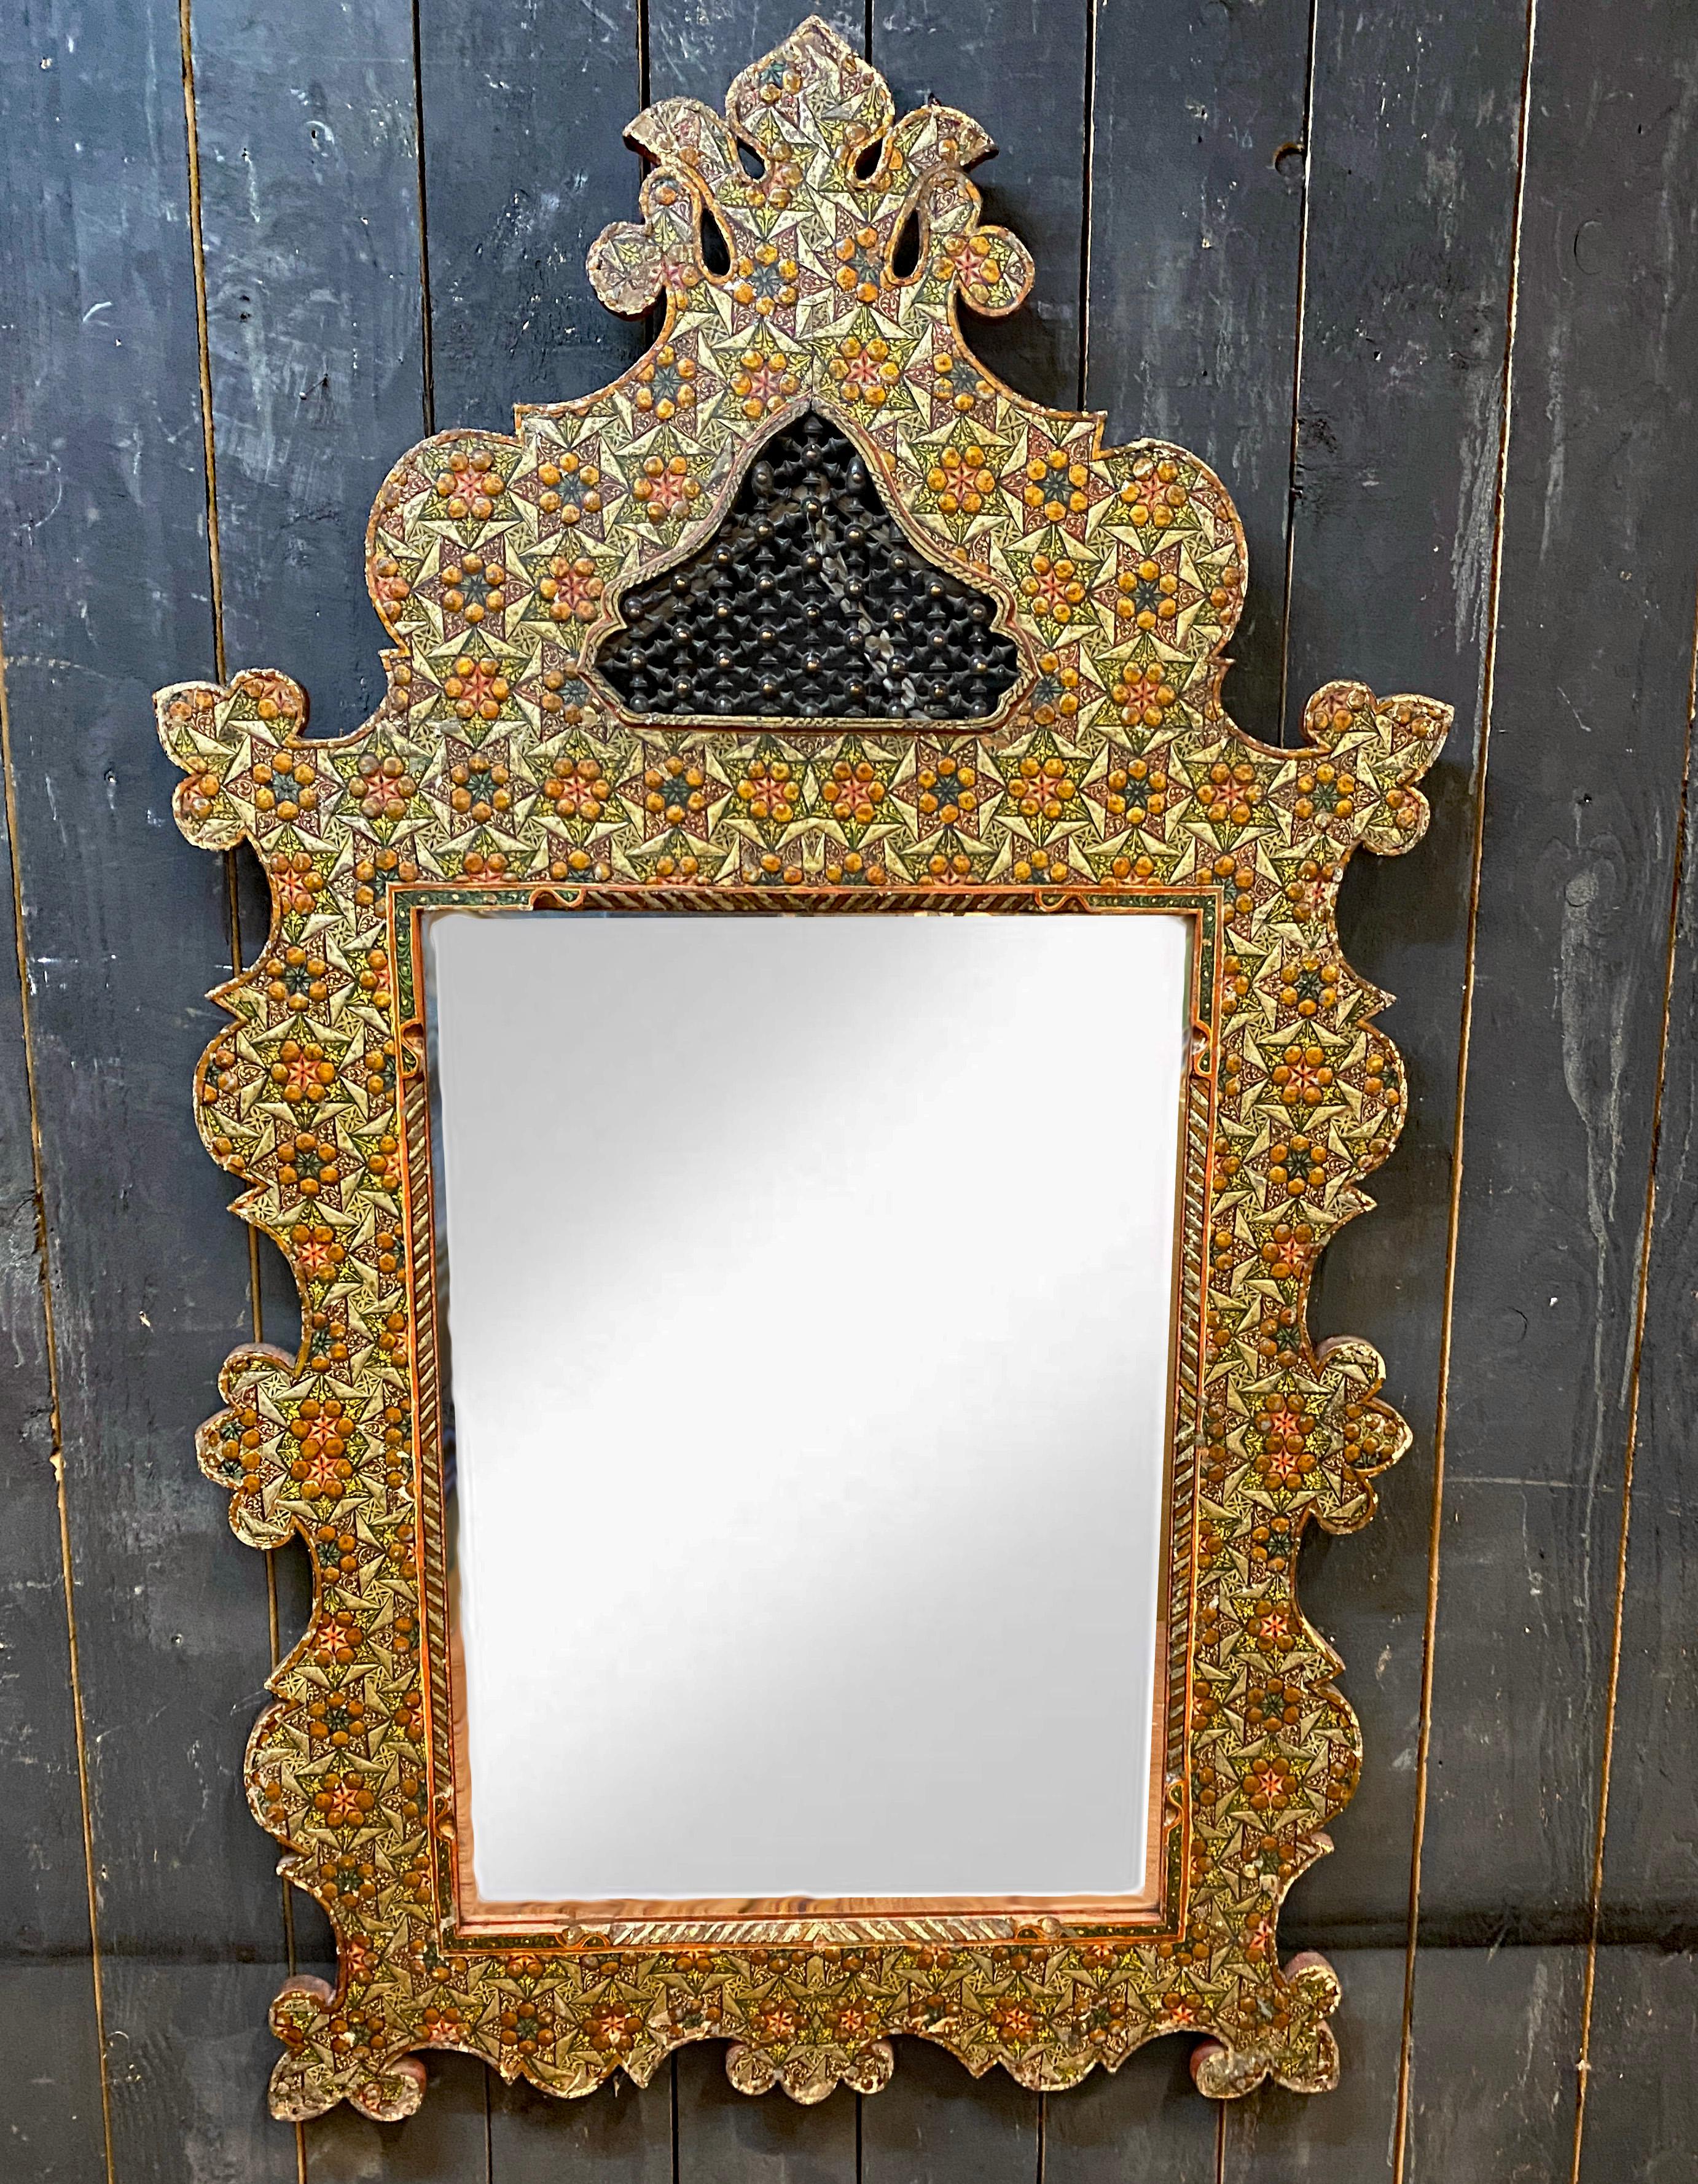 Ancien grand miroir oriental en bois gravé et polychromé ;
miroir biseauté
petites pertes de peinture